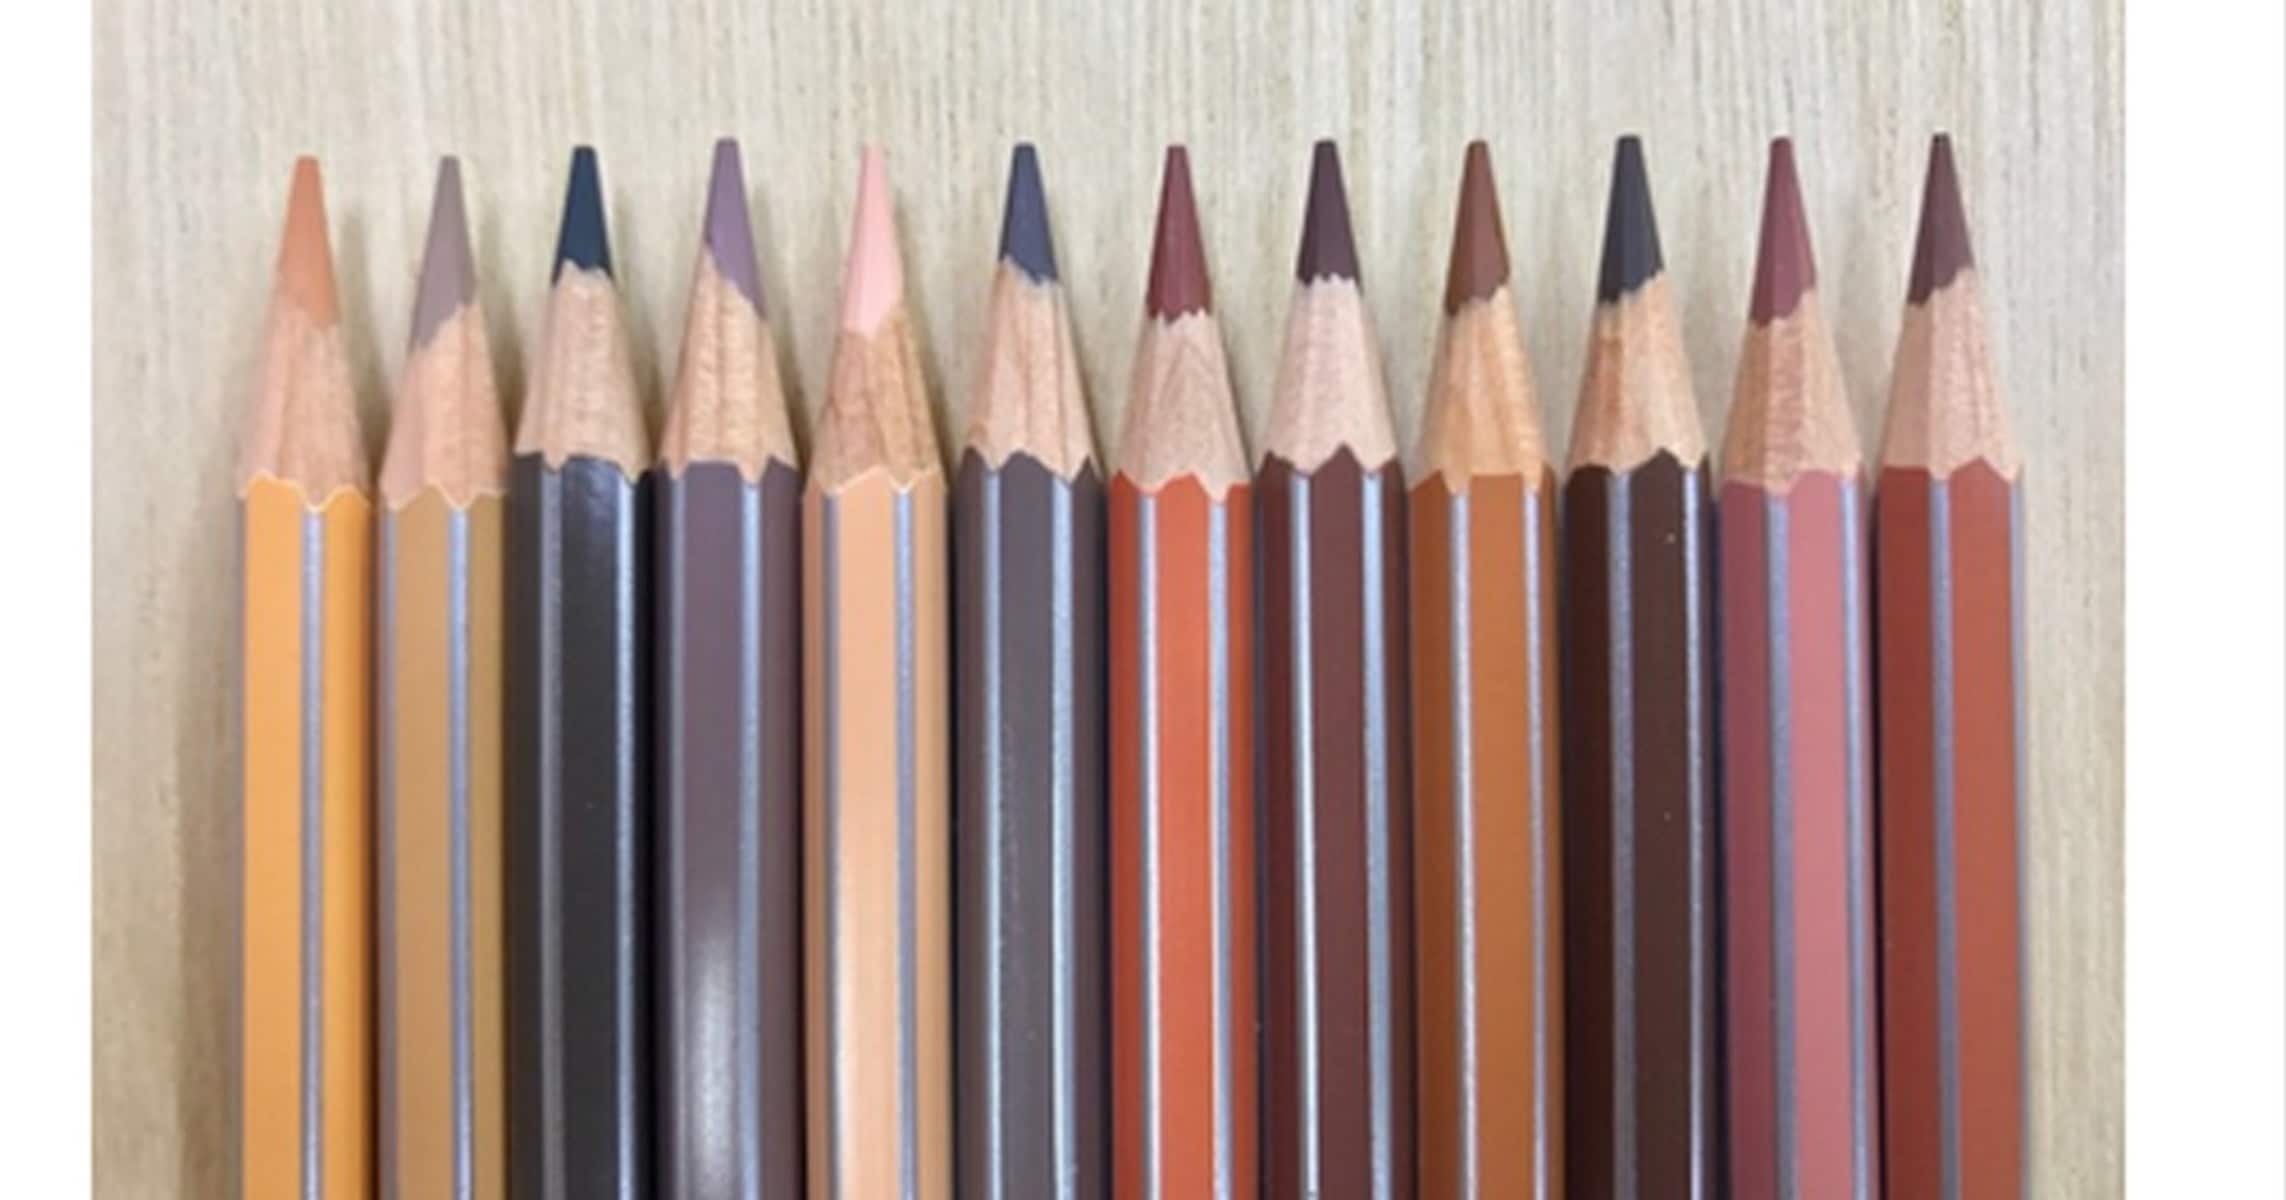 子供の国際化教育は英語より「肌色鉛筆セット」のほうが効果的!?